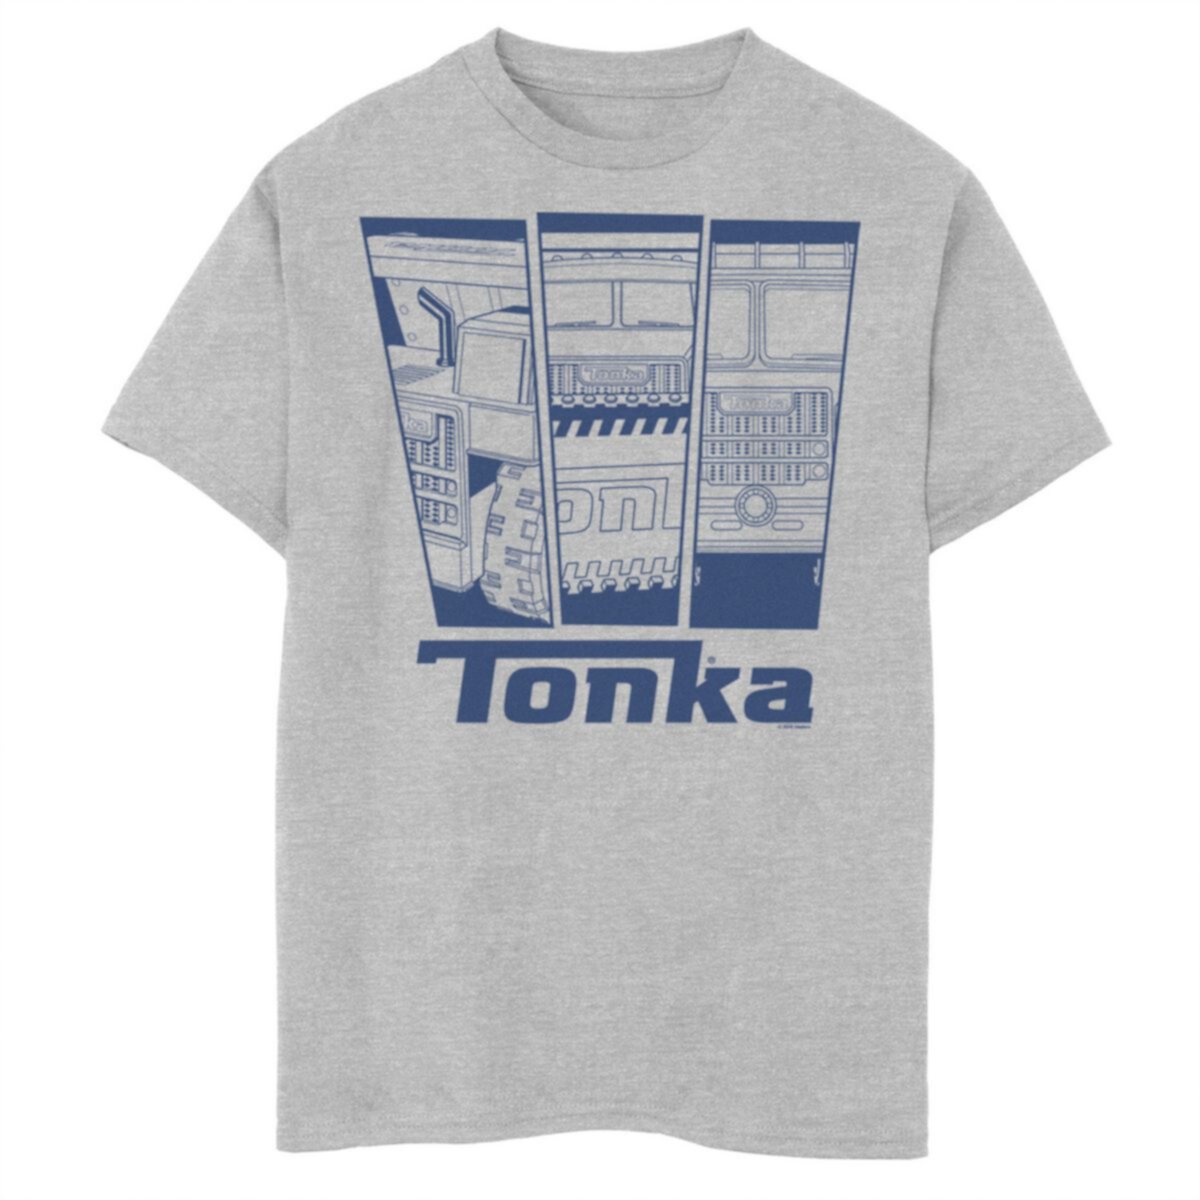 Футболка с графическим рисунком Tonka Truck Panels для мальчиков 8–20 лет Tonka